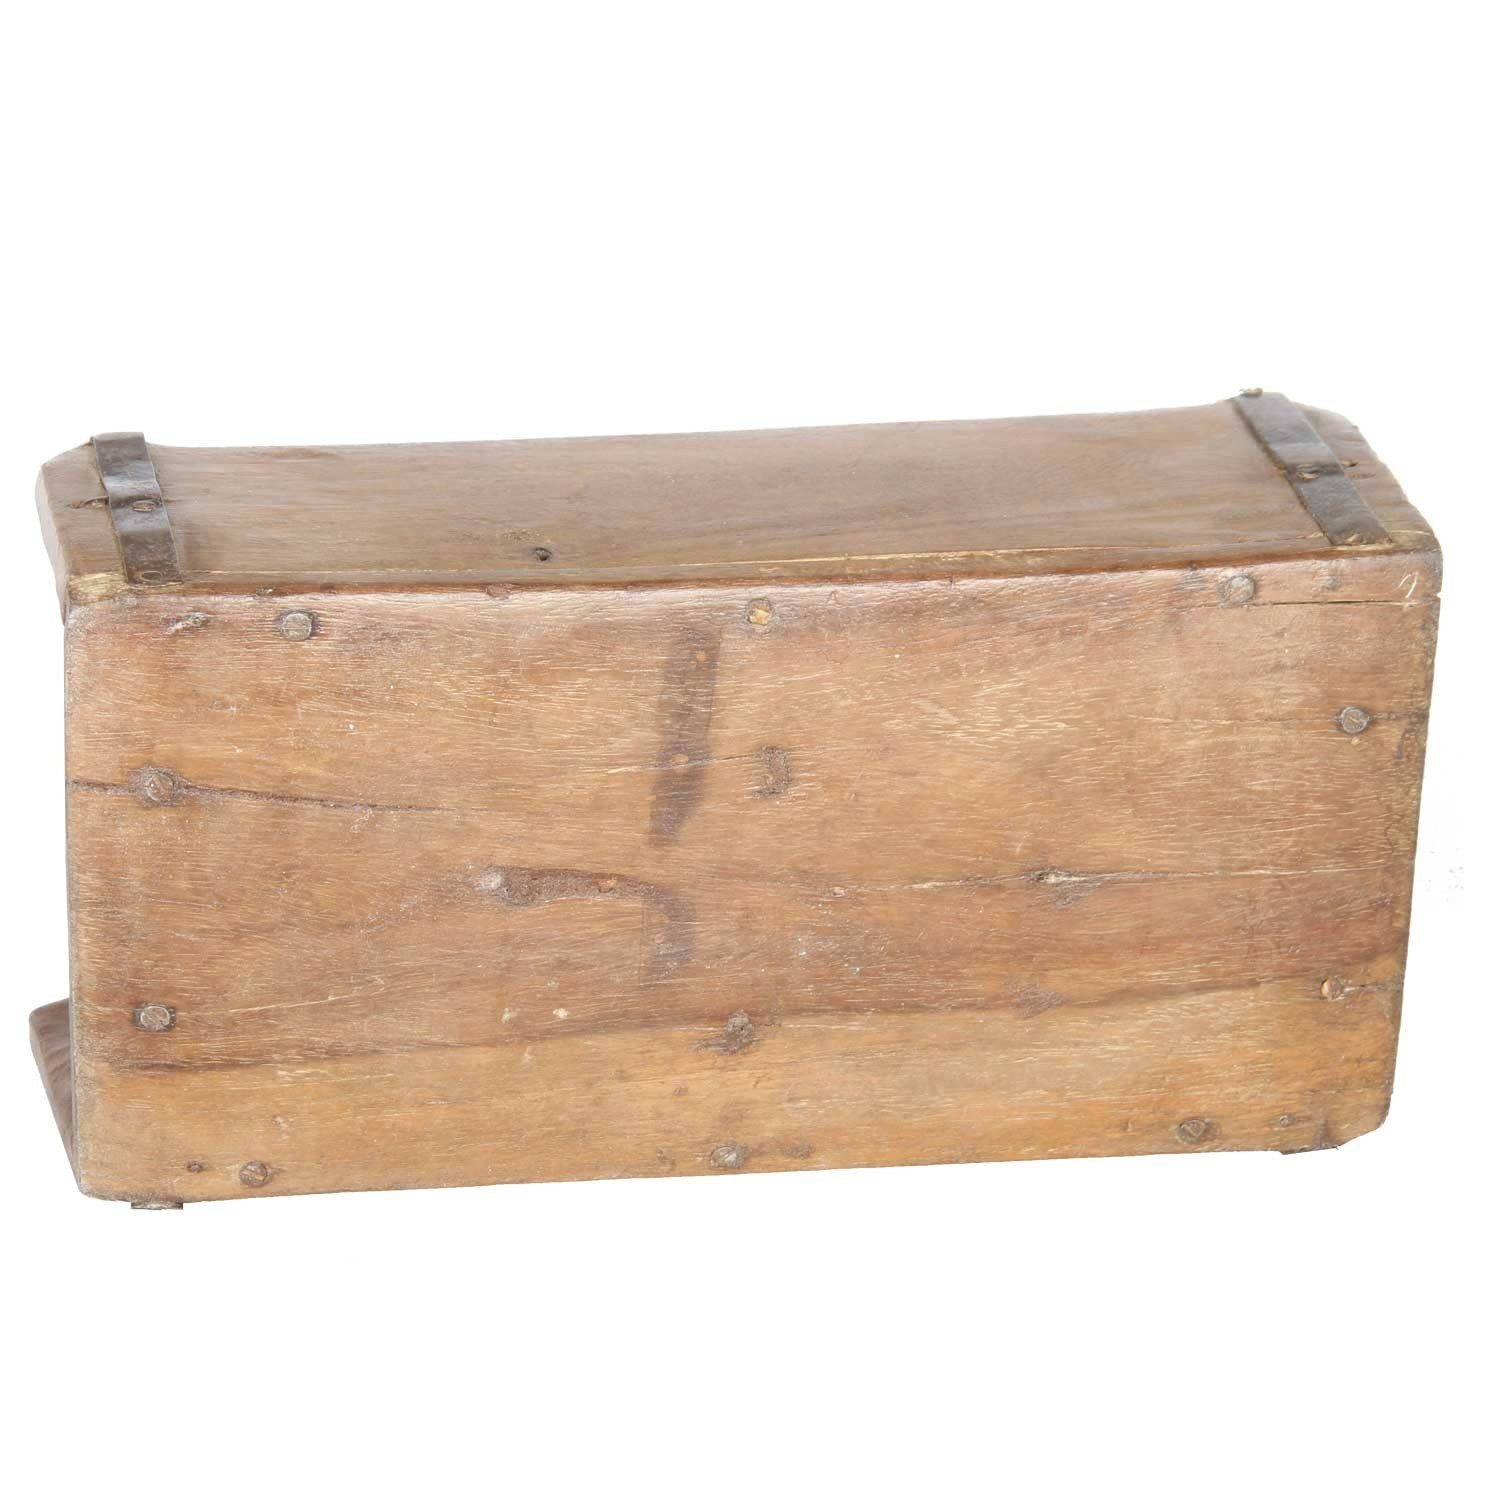 Ziegelform Altholz, aus Balu Ziegelform aus Vintage aufbereitetes Altholz, Moro Alte Casa Backsteinform, Kiste Holzbox, Aufbewahrungsbox Deko